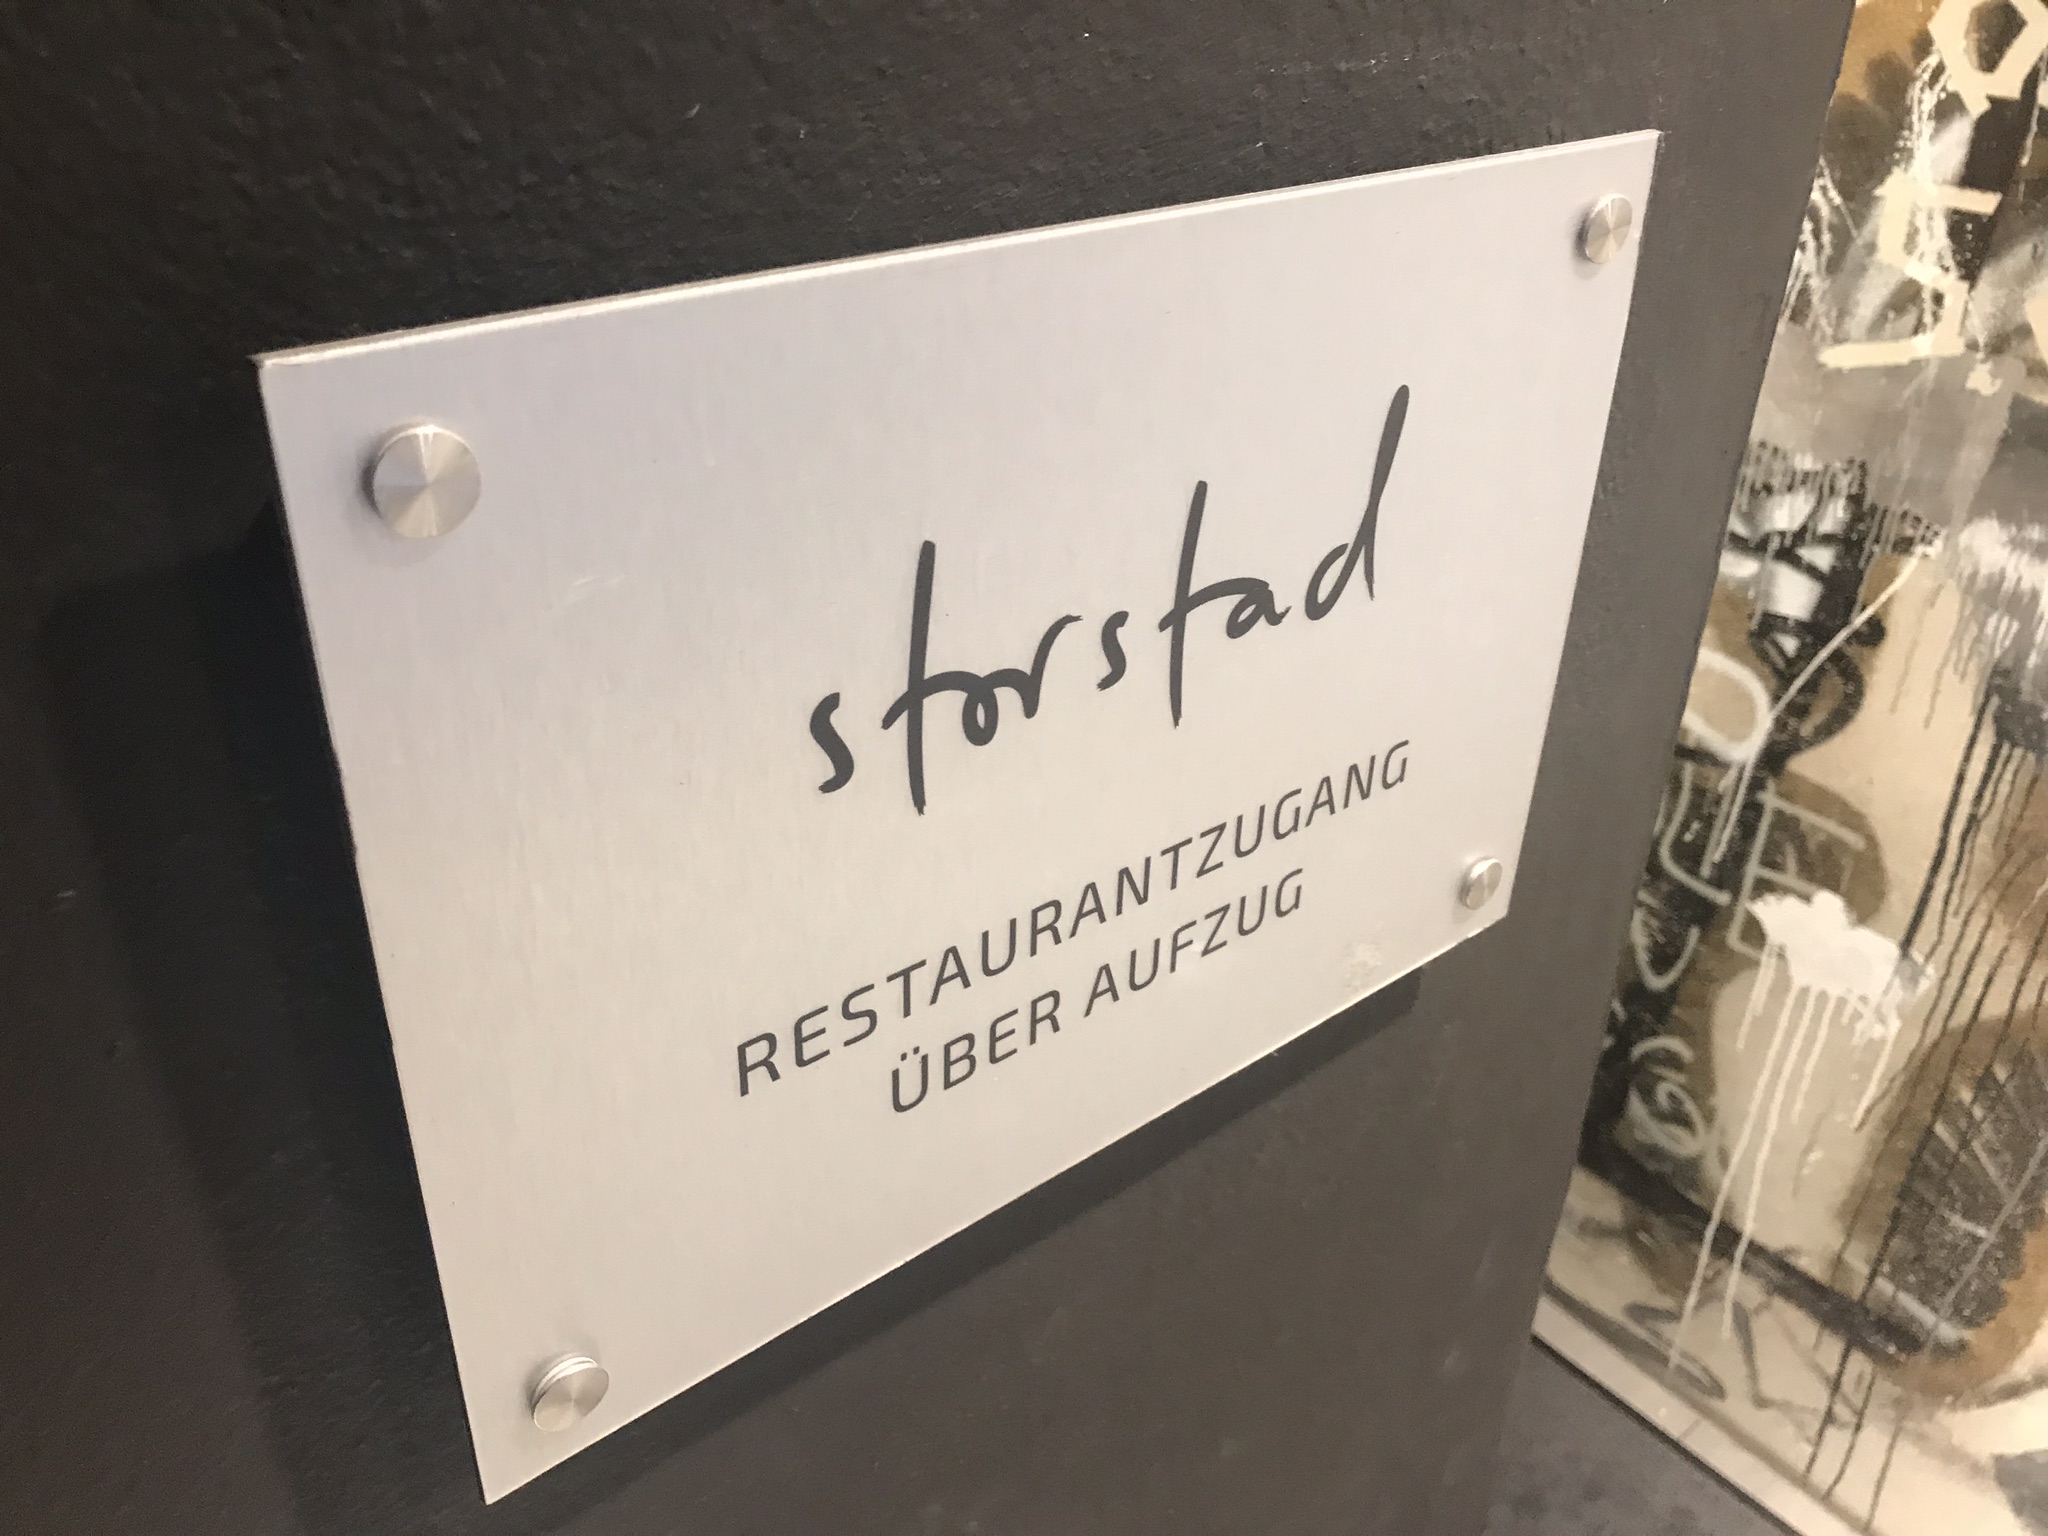 Restaurant Storstad Regensburg